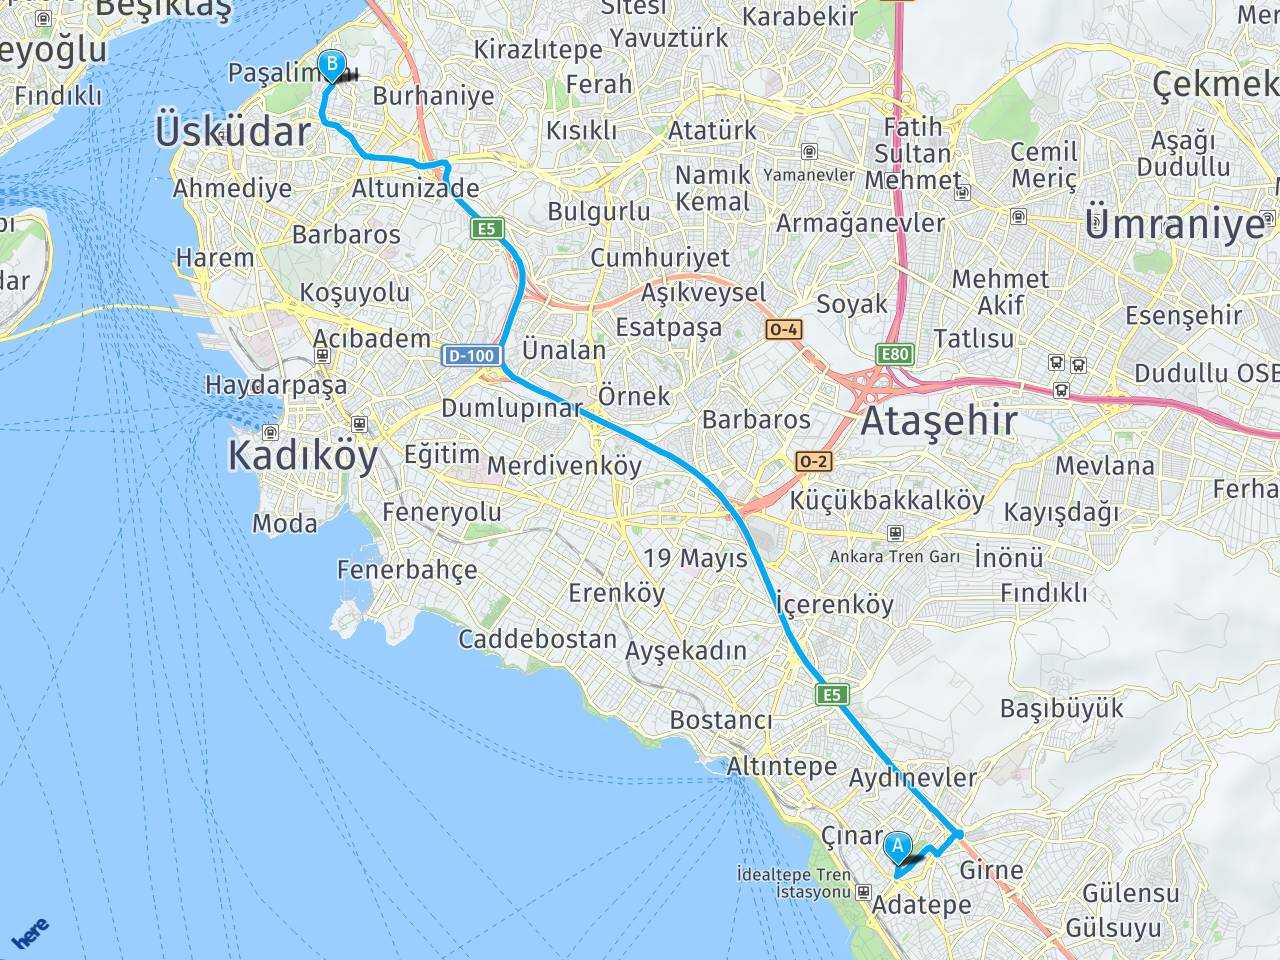 Maltepe Marmaray üsküdar haritası